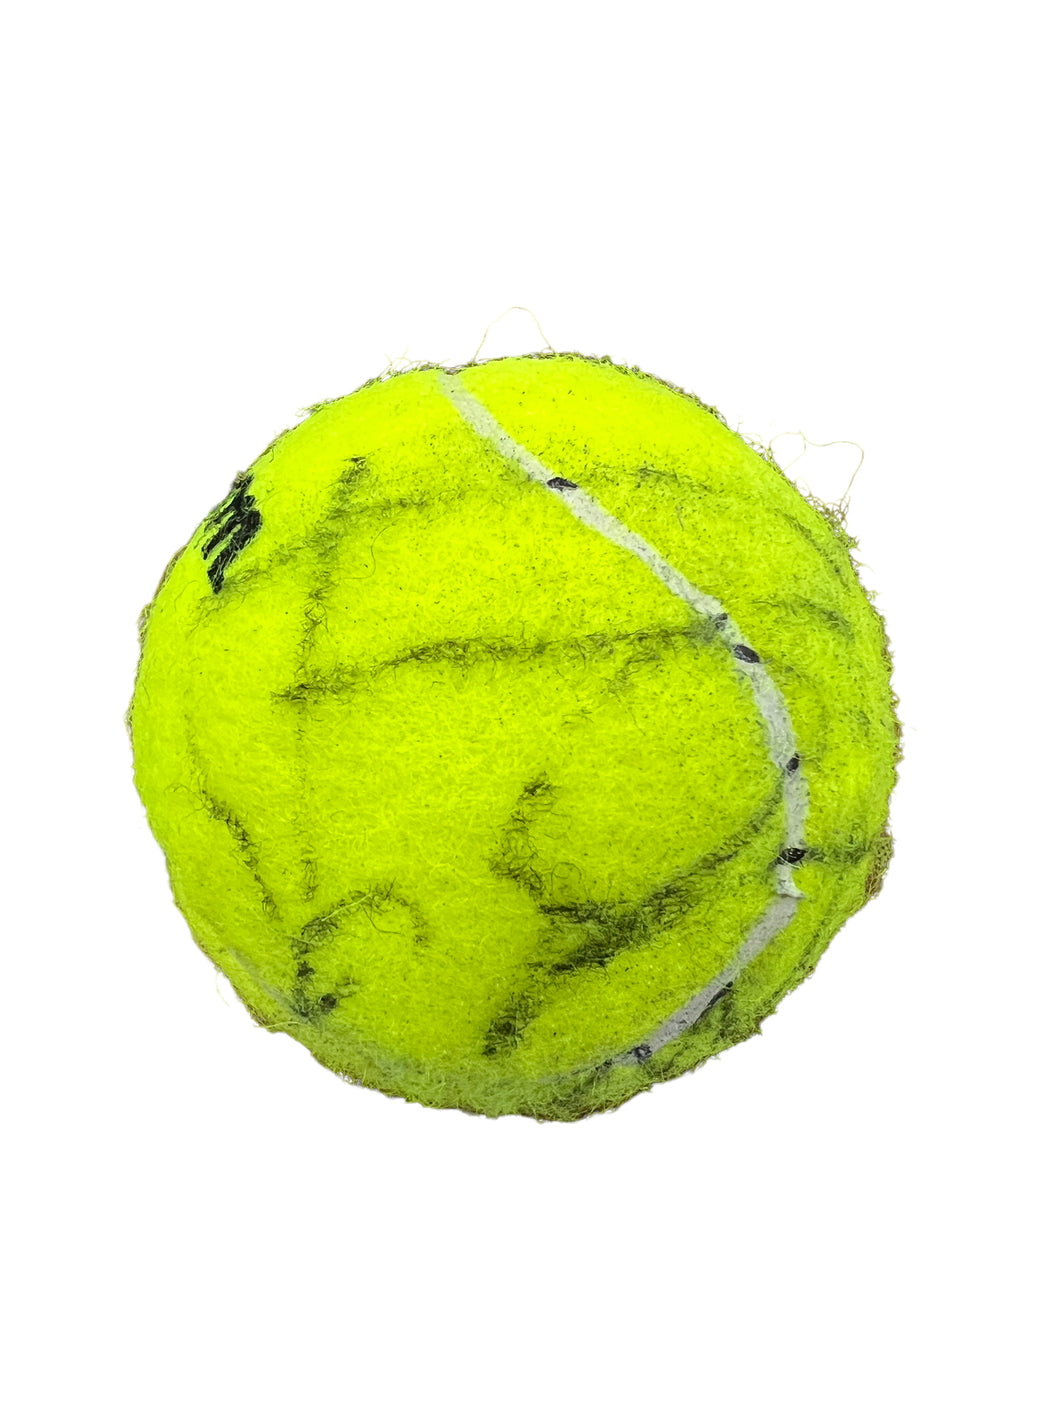 Pelota / Tenis / Rafael Nadal